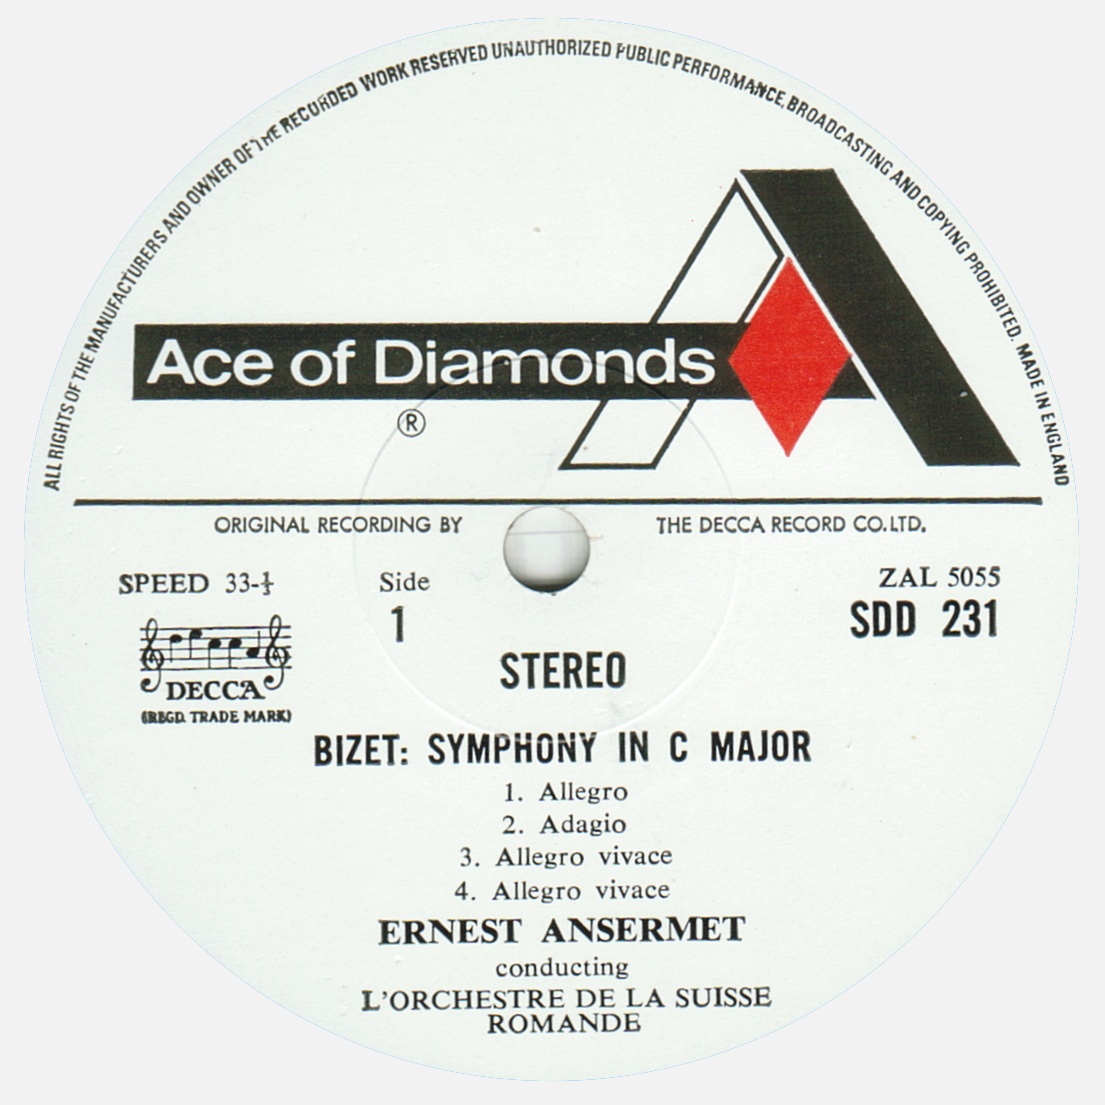 Étiquette recto du disque Decca Ace of Diamonds SDD 231, cliquer pour une vue agrandie